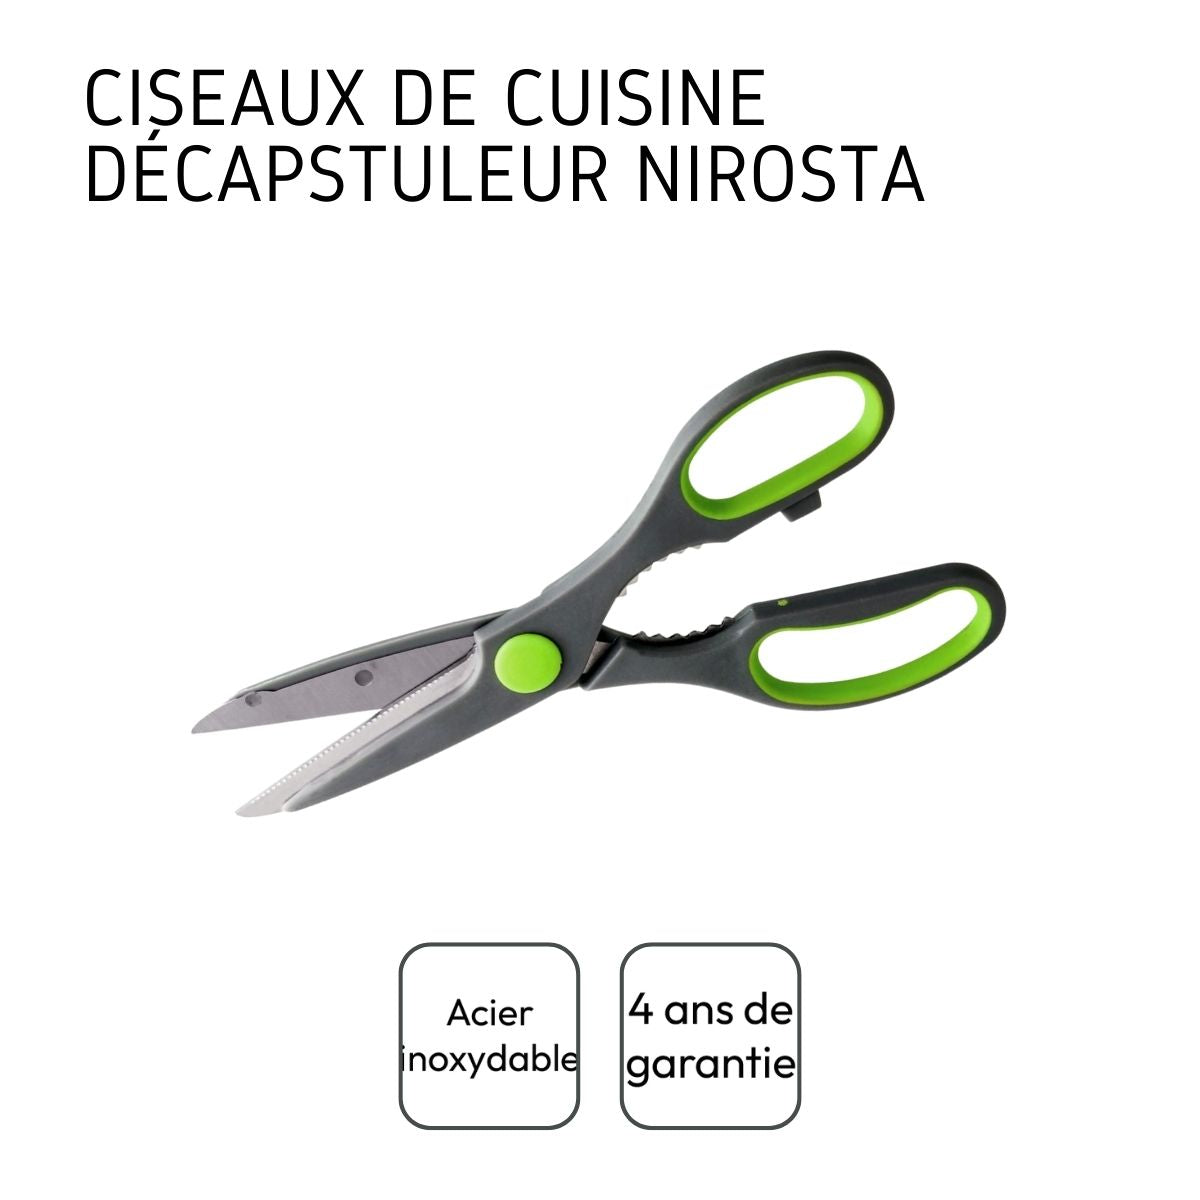 Ciseaux de cuisine décapsuleur Nirosta